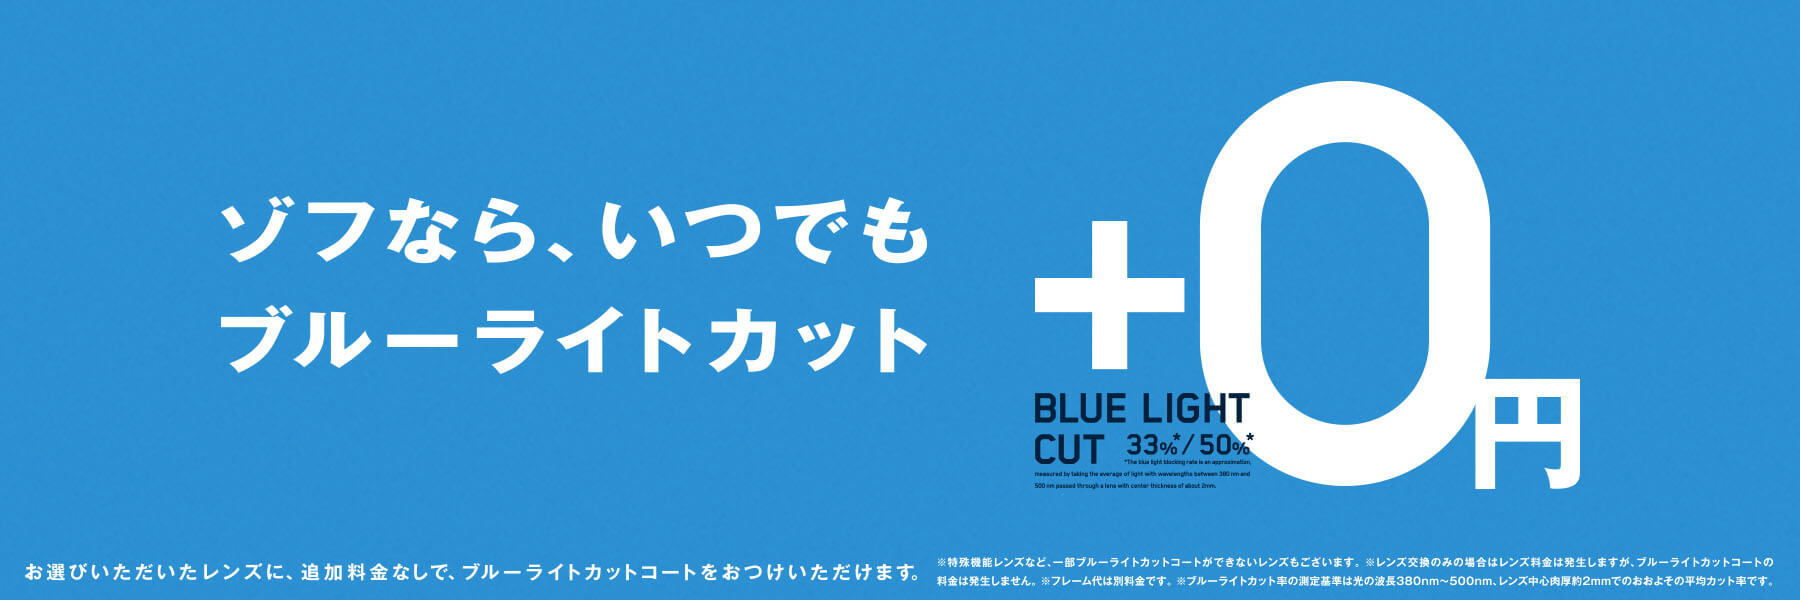 ブルーライトカットが、標準装備！ 追加料金0円！